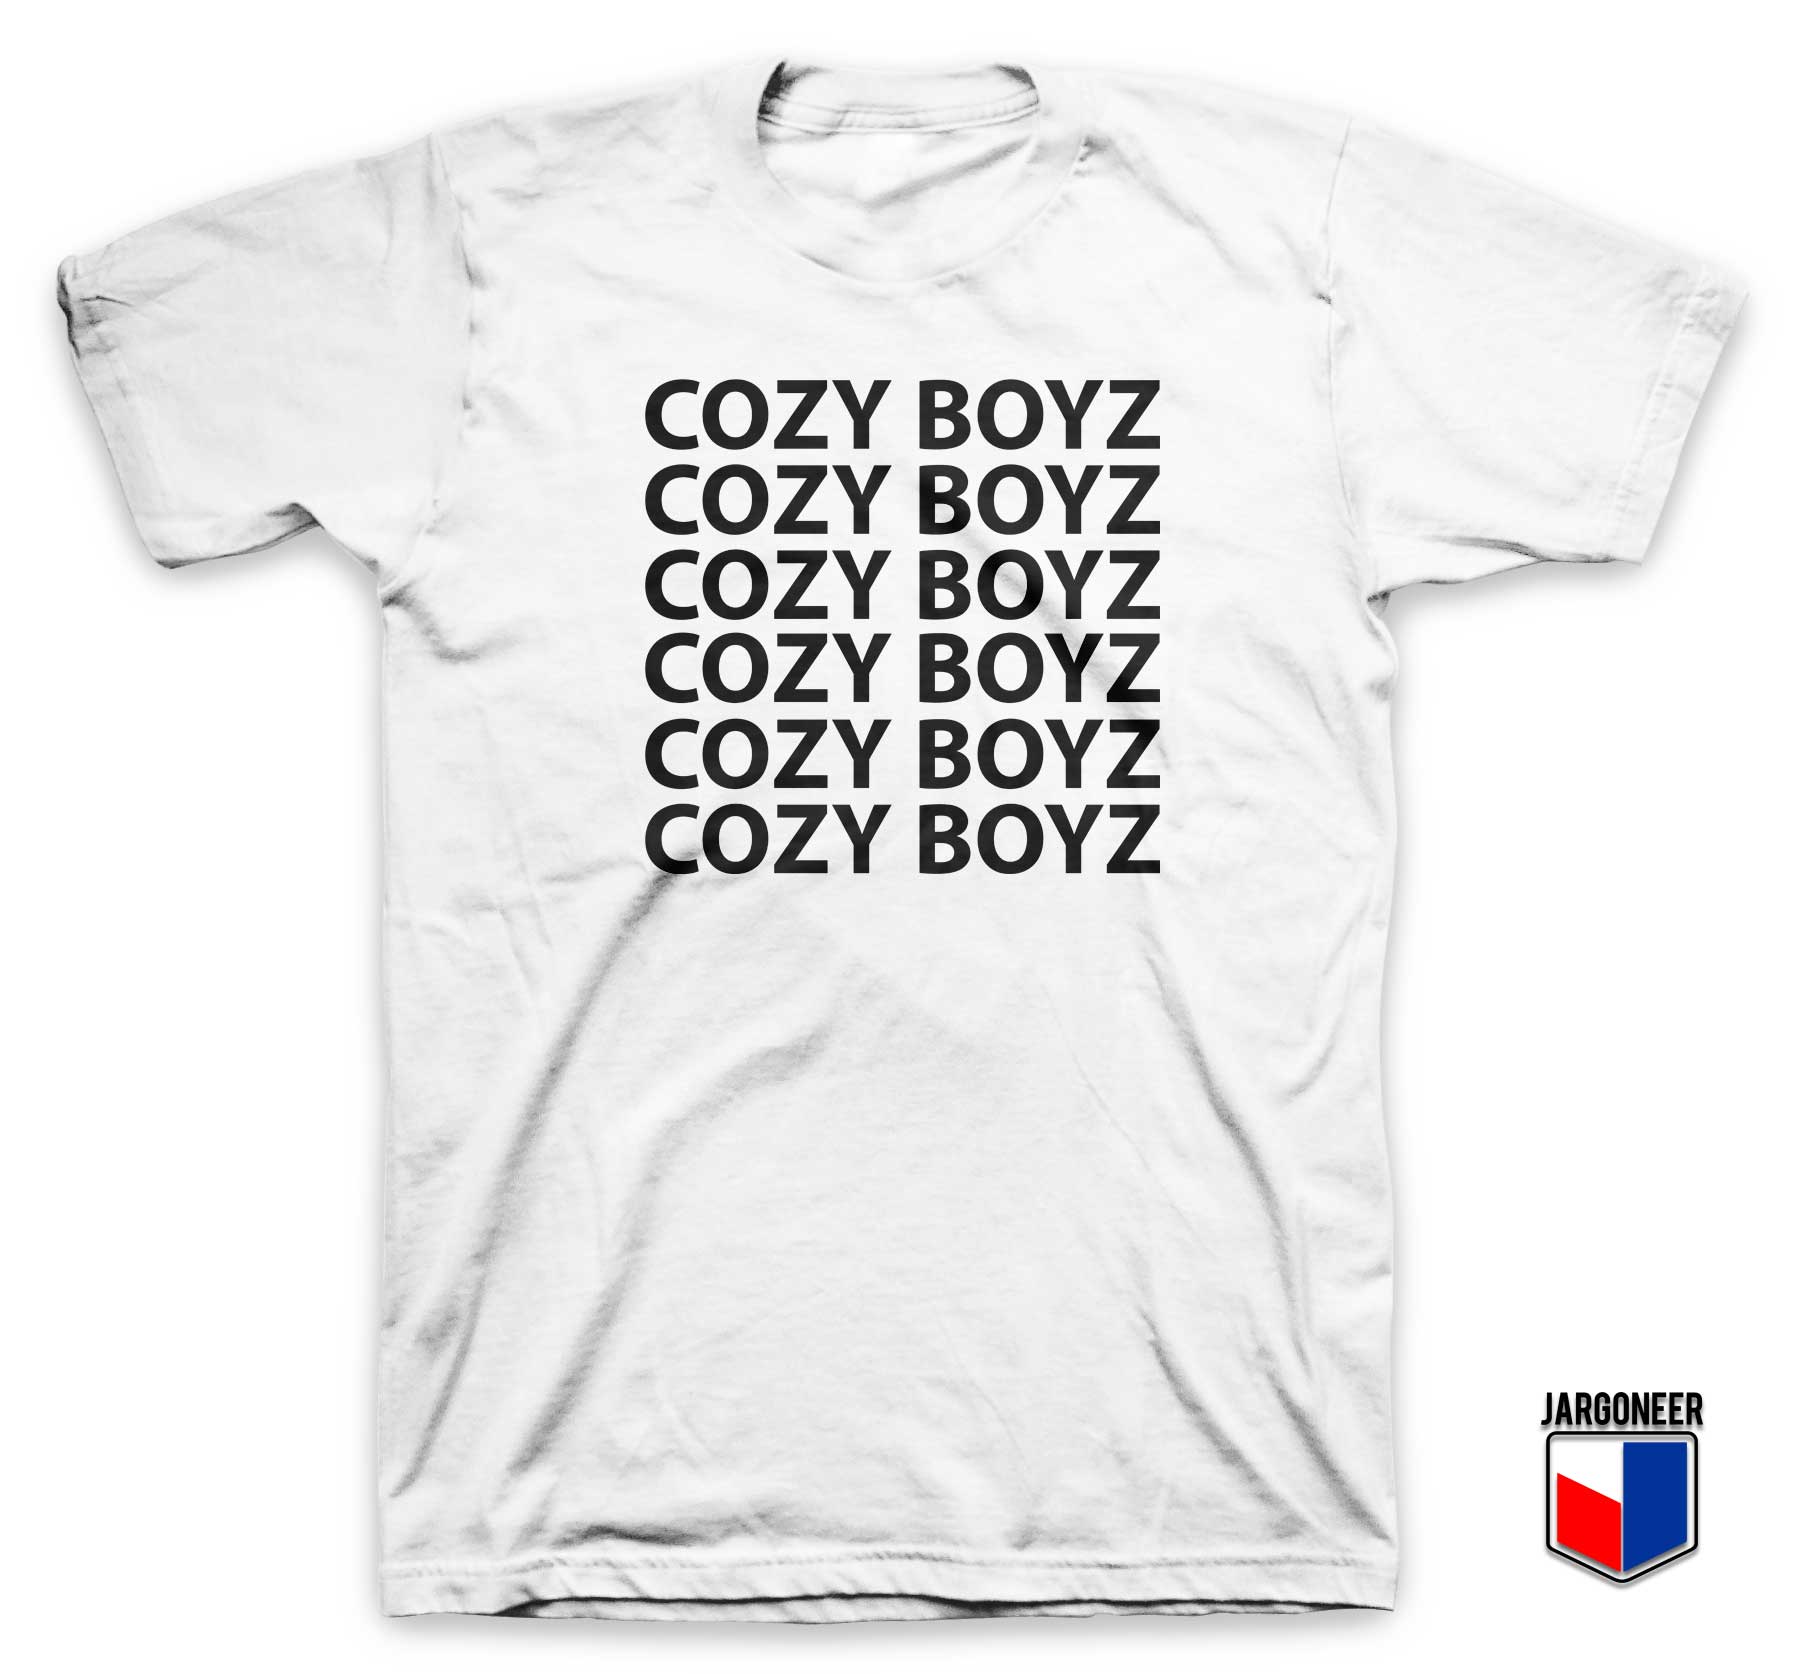 Cozy Boyz T Shirt - Shop Unique Graphic Cool Shirt Designs